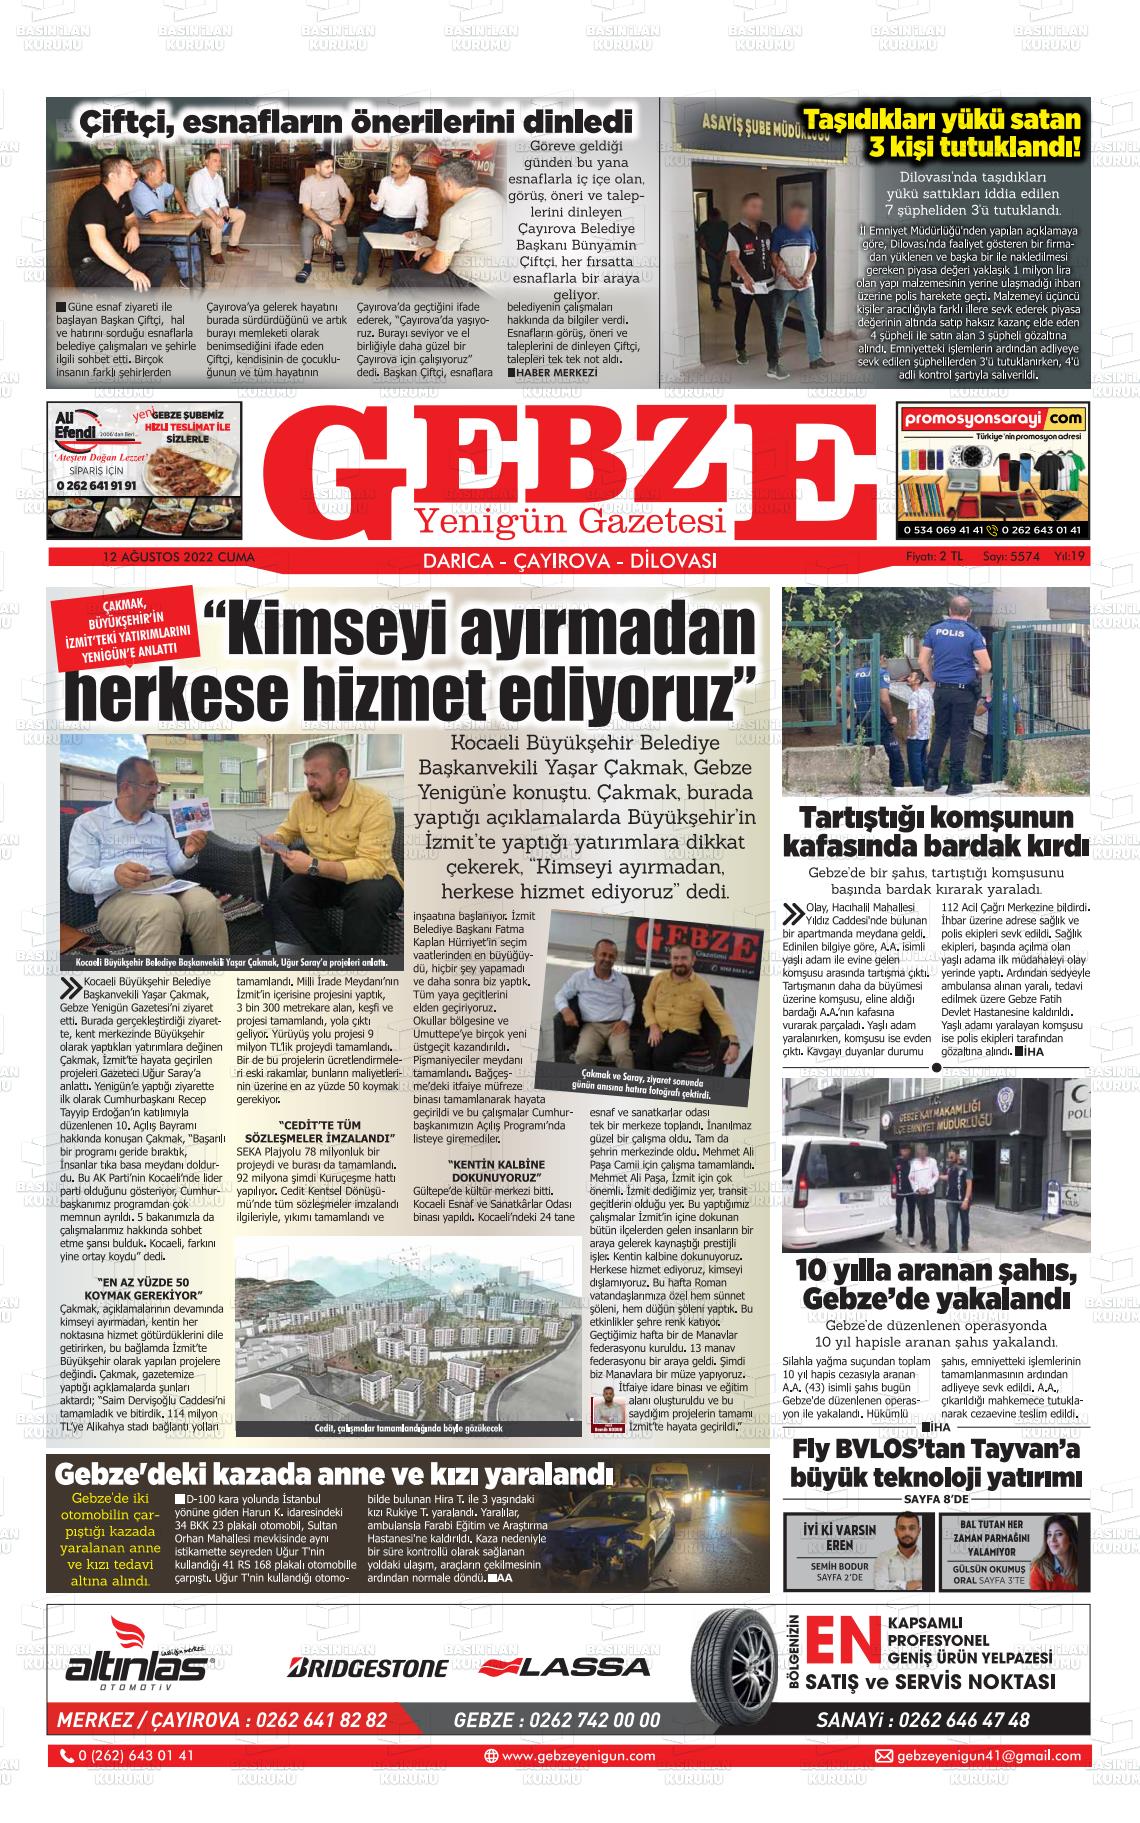 12 Ağustos 2022 Gebze Yenigün Gazete Manşeti